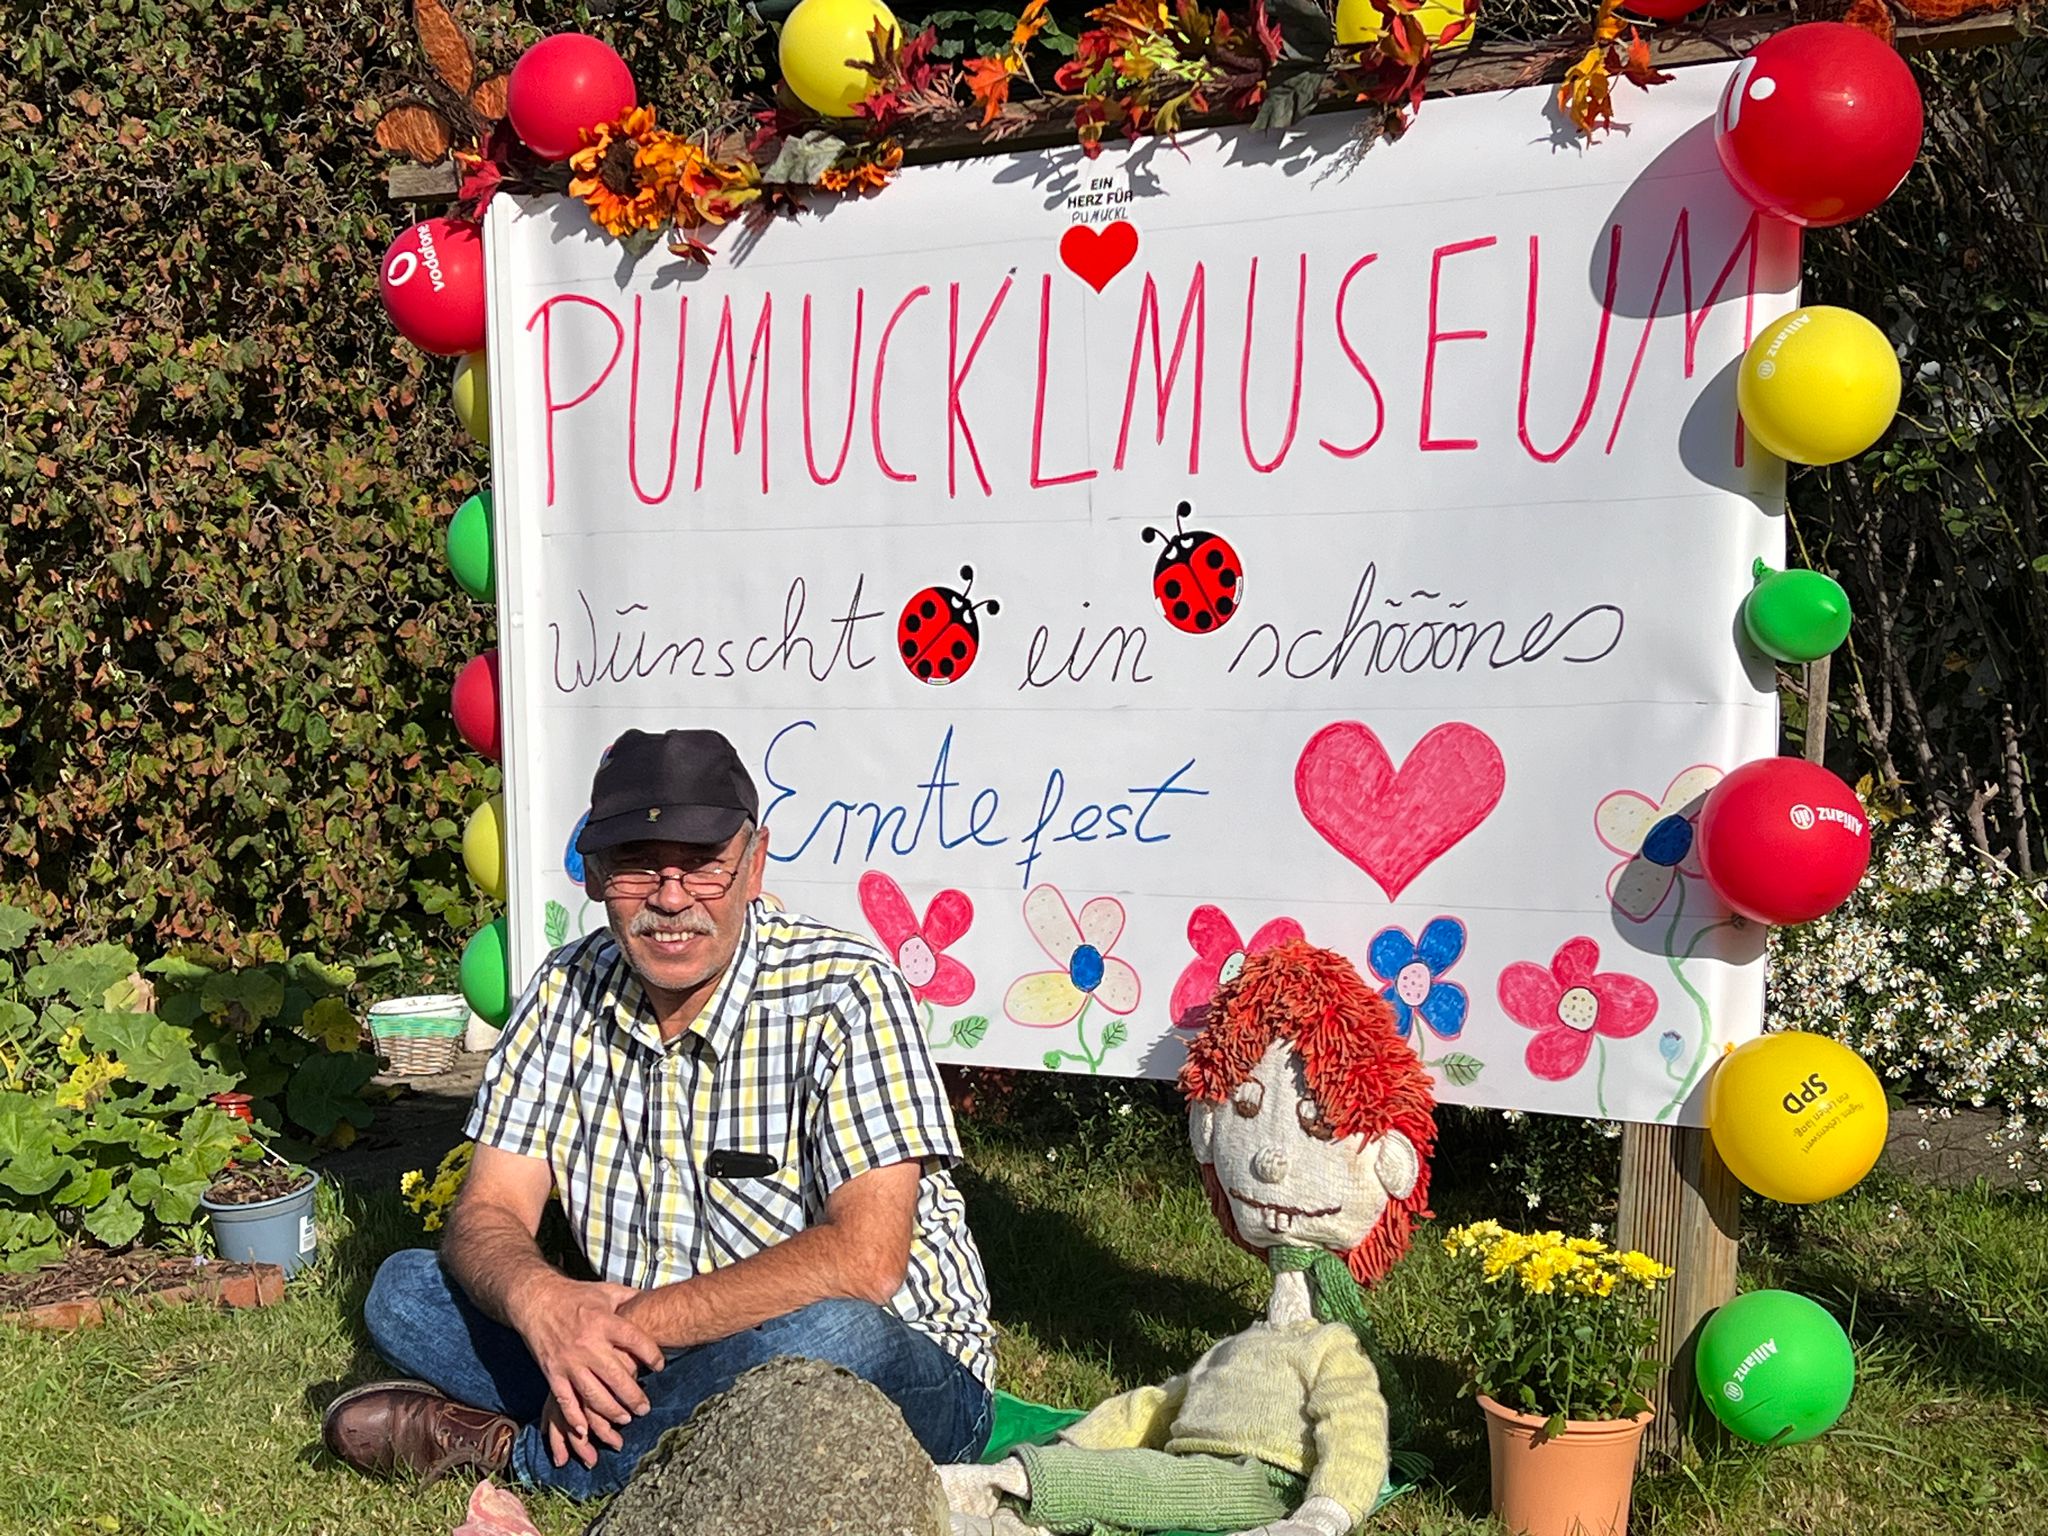 Inhalber des Pumuckl Museums Sven Coorßen mit einer Pumuckl Stoffpuppe vor einer Leinwand mit der Aufschrift "Pumucklmuseum wünscht ein schööönes Erntefest"